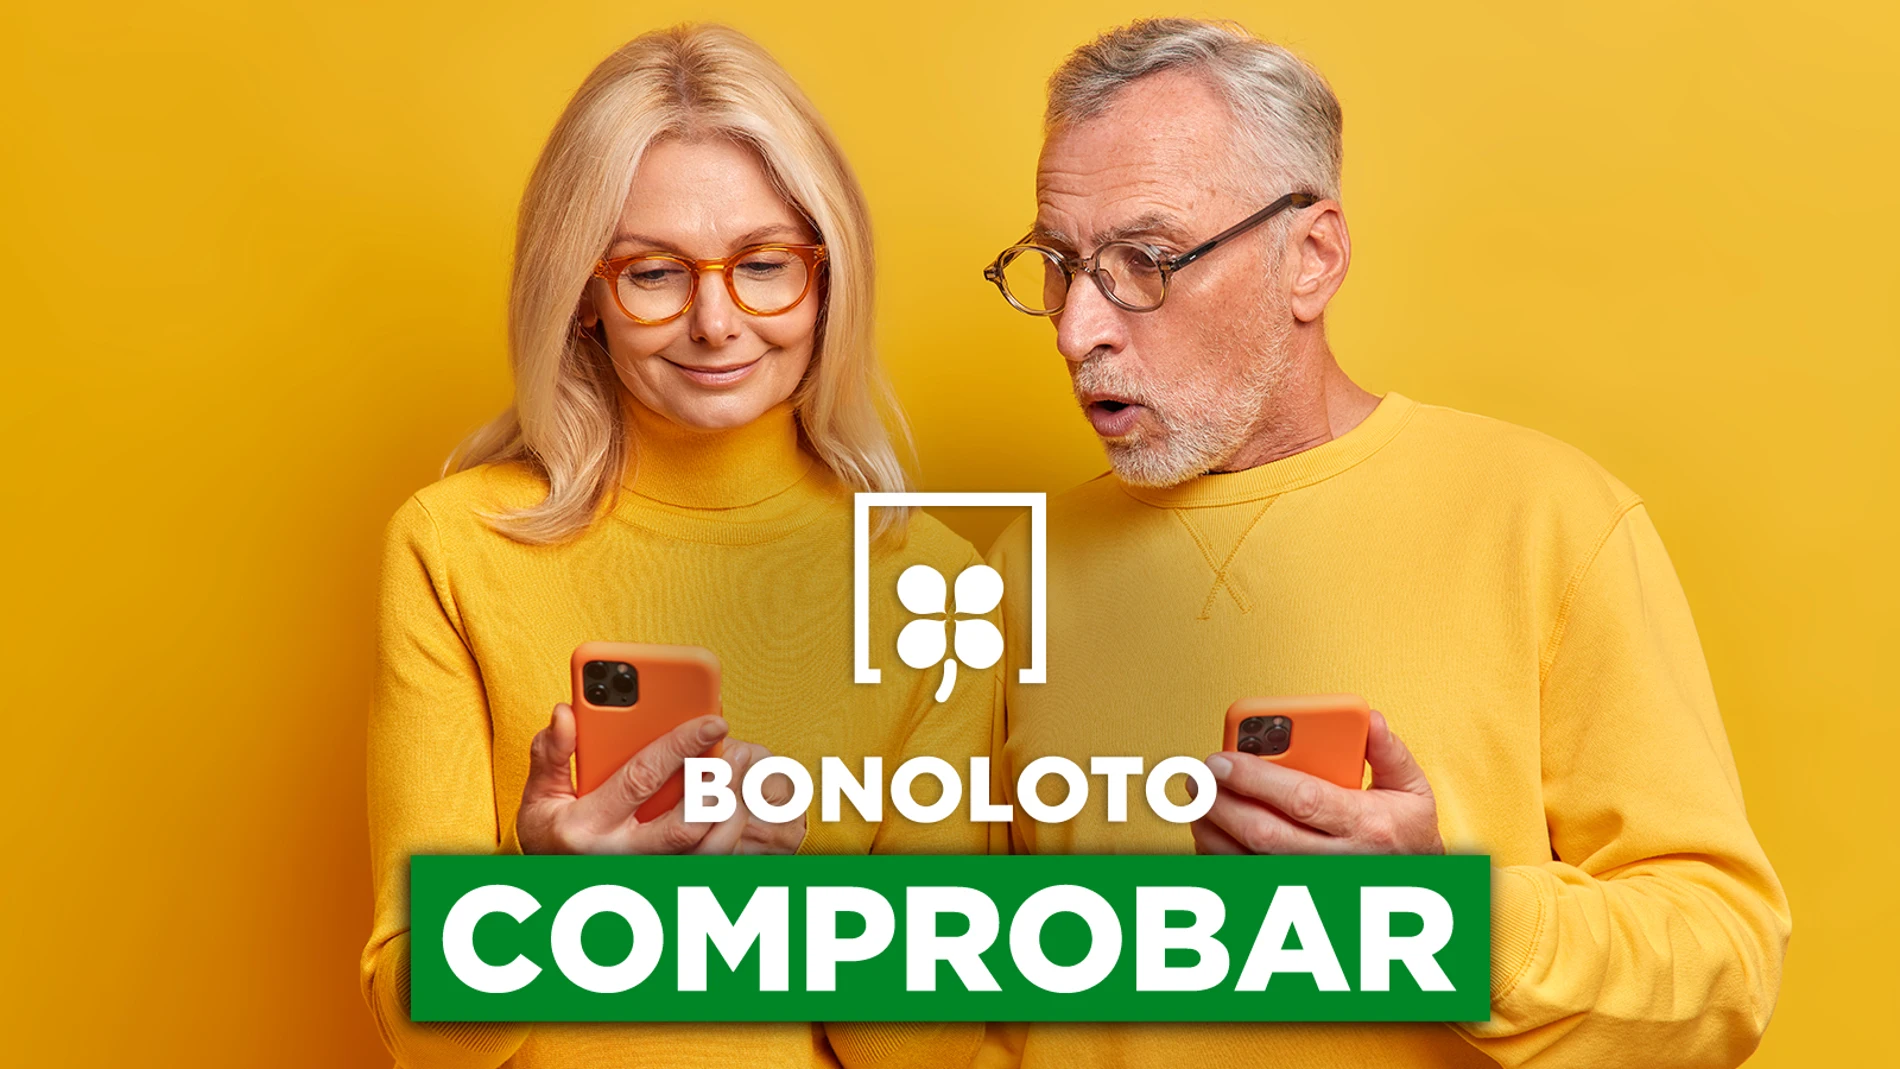 Bonoloto: comprobar hoy, viernes 13 de mayo de 2022